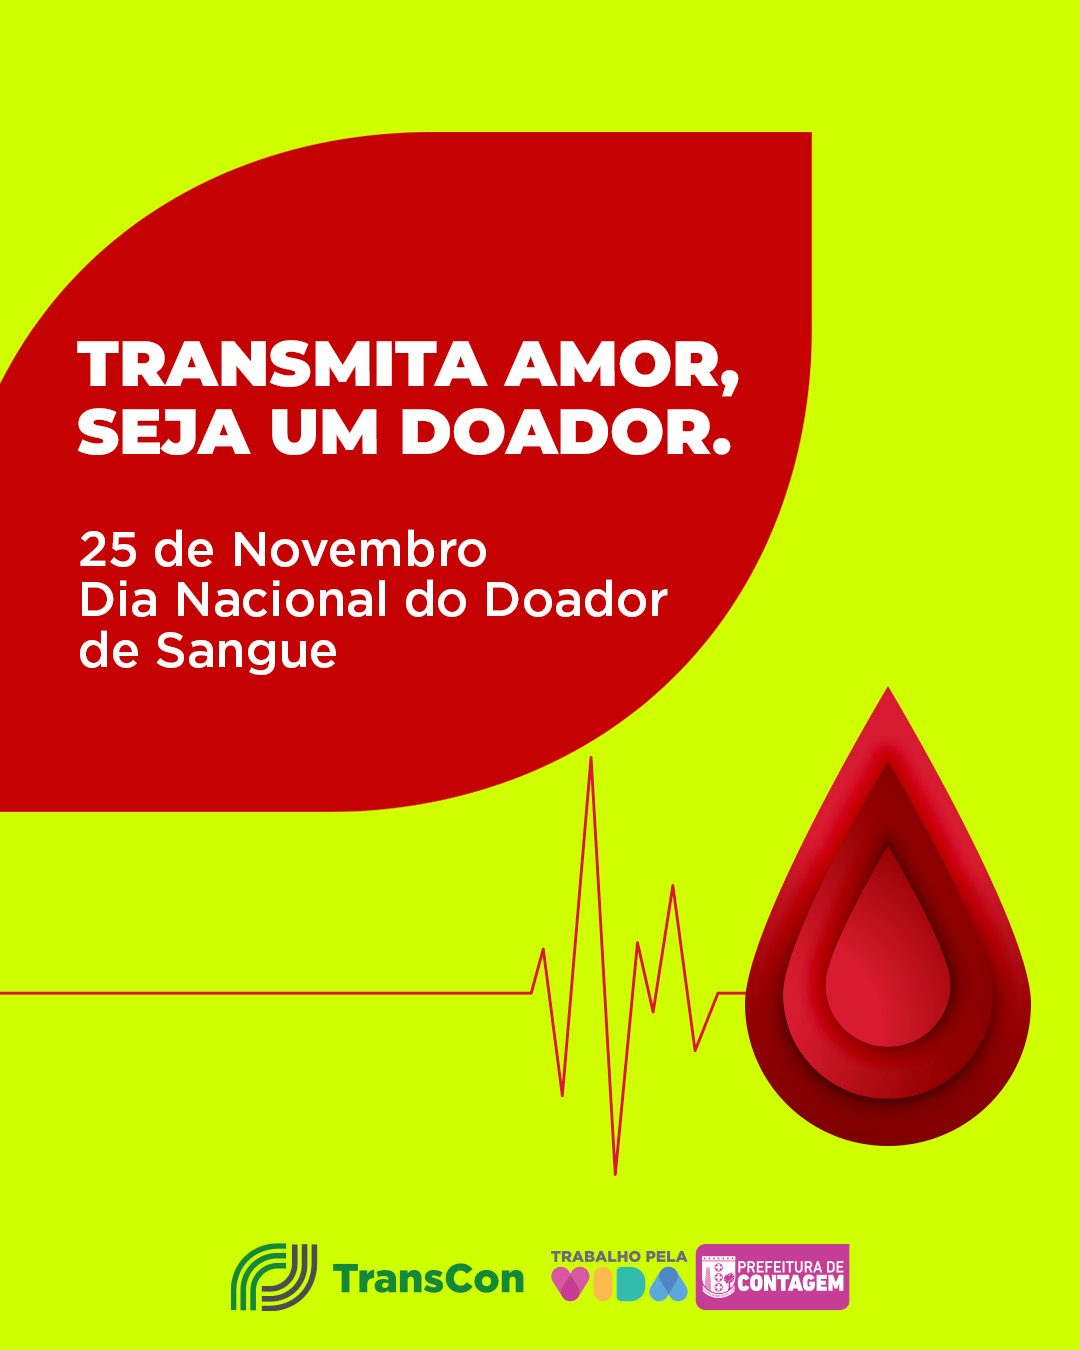 “Transmita amor, seja um doador”: Transcon realiza campanha de doação de sangue